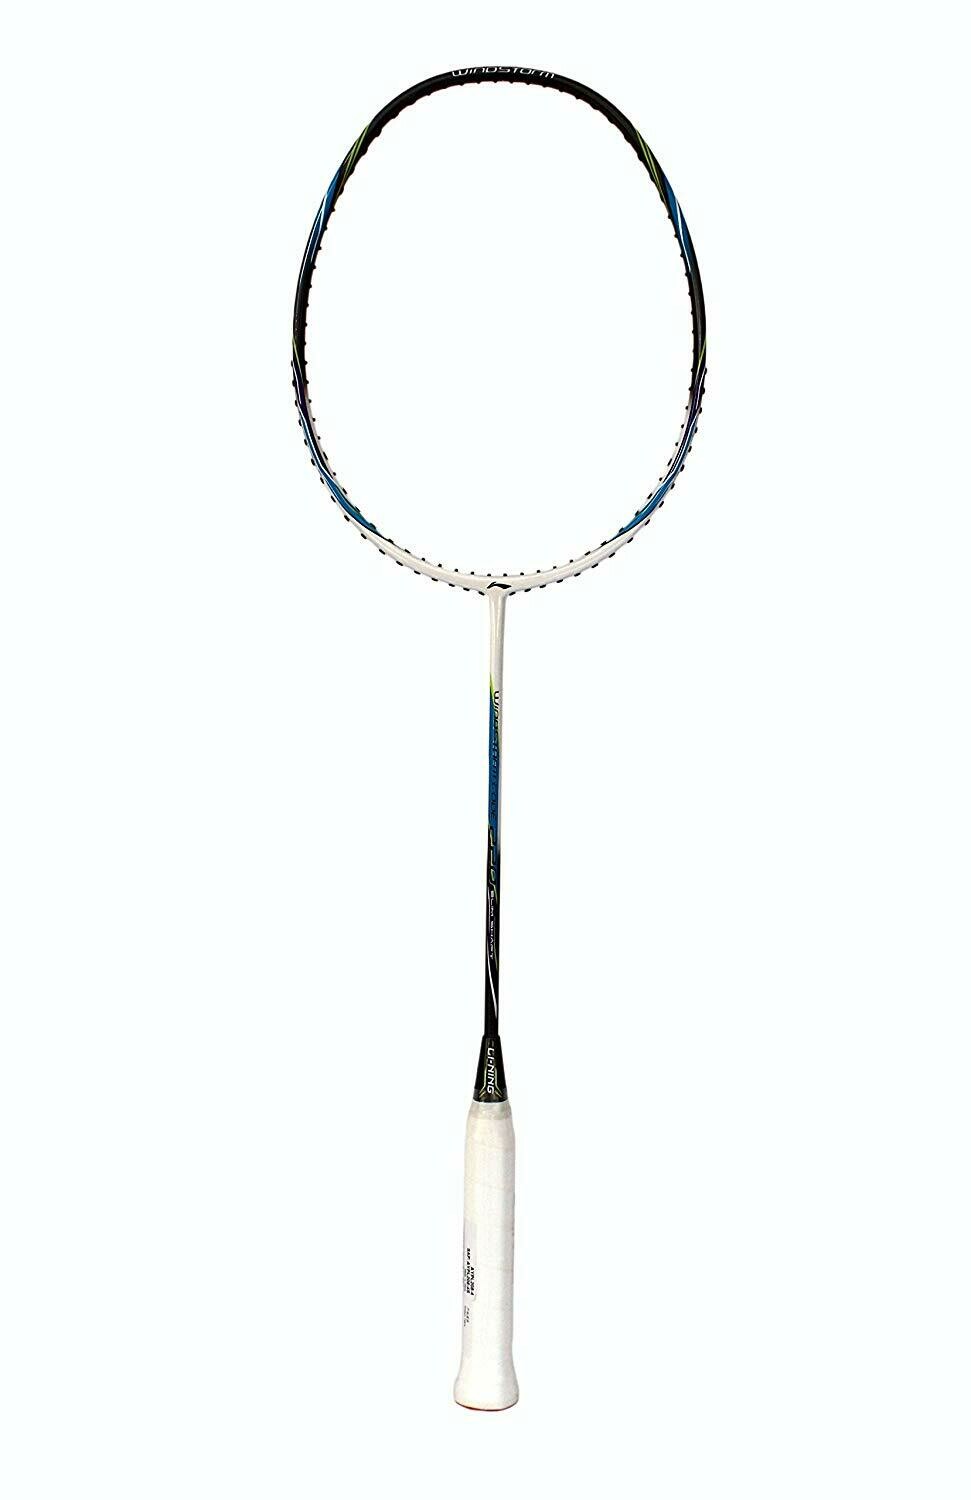 LI-NING Windstorm Code 220 Slim Shaft Badminton Racquet